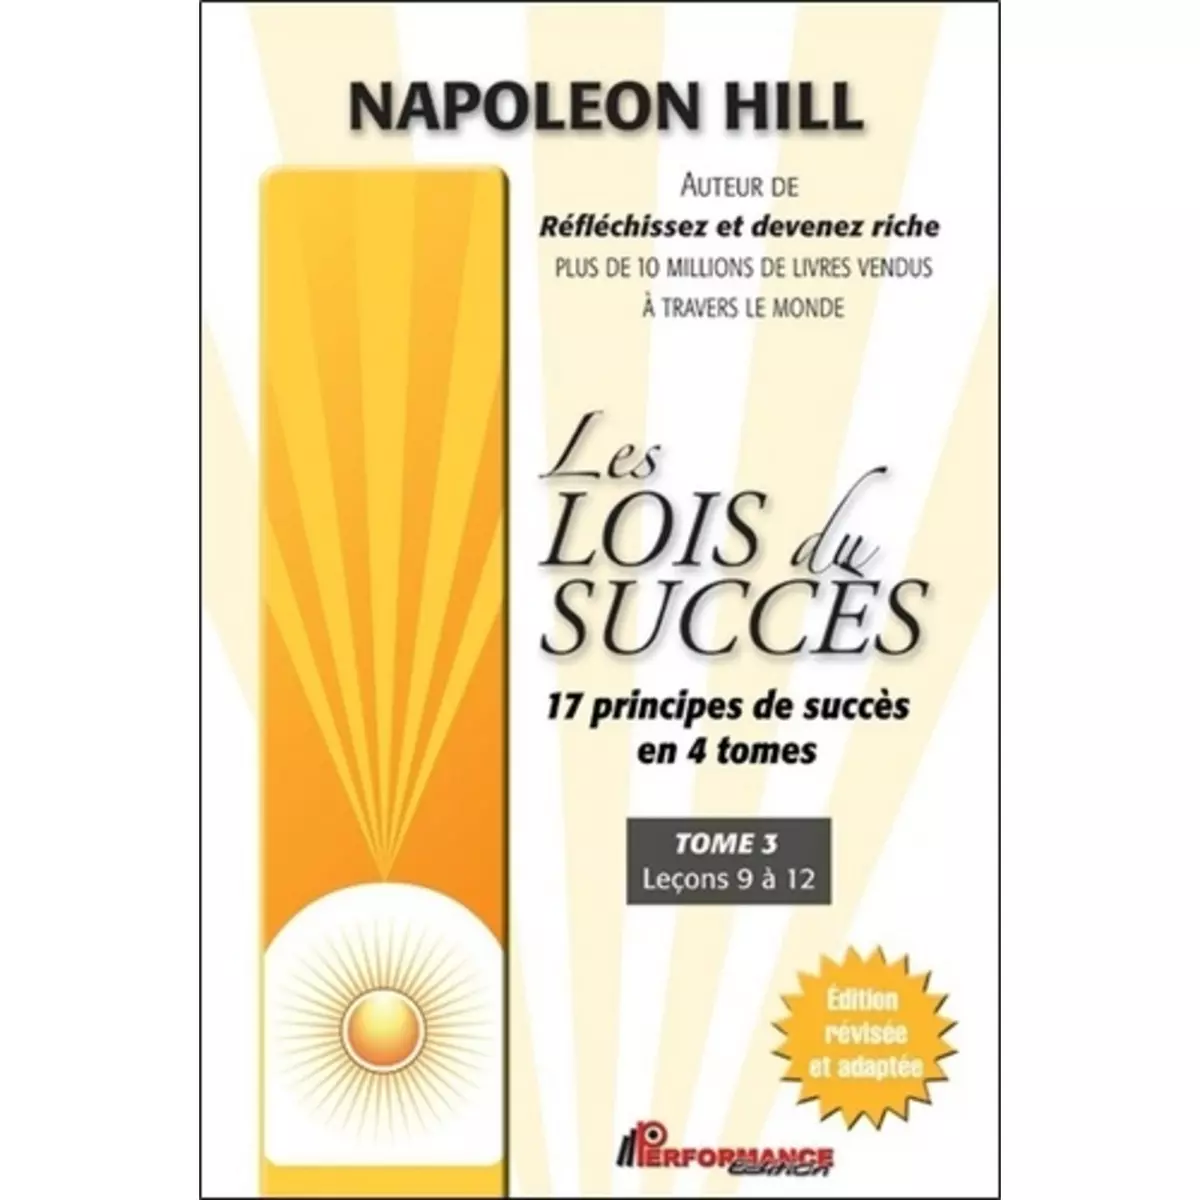  LES LOIS DU SUCCES. TOME 3, LECONS 9 A 12, Hill Napoleon